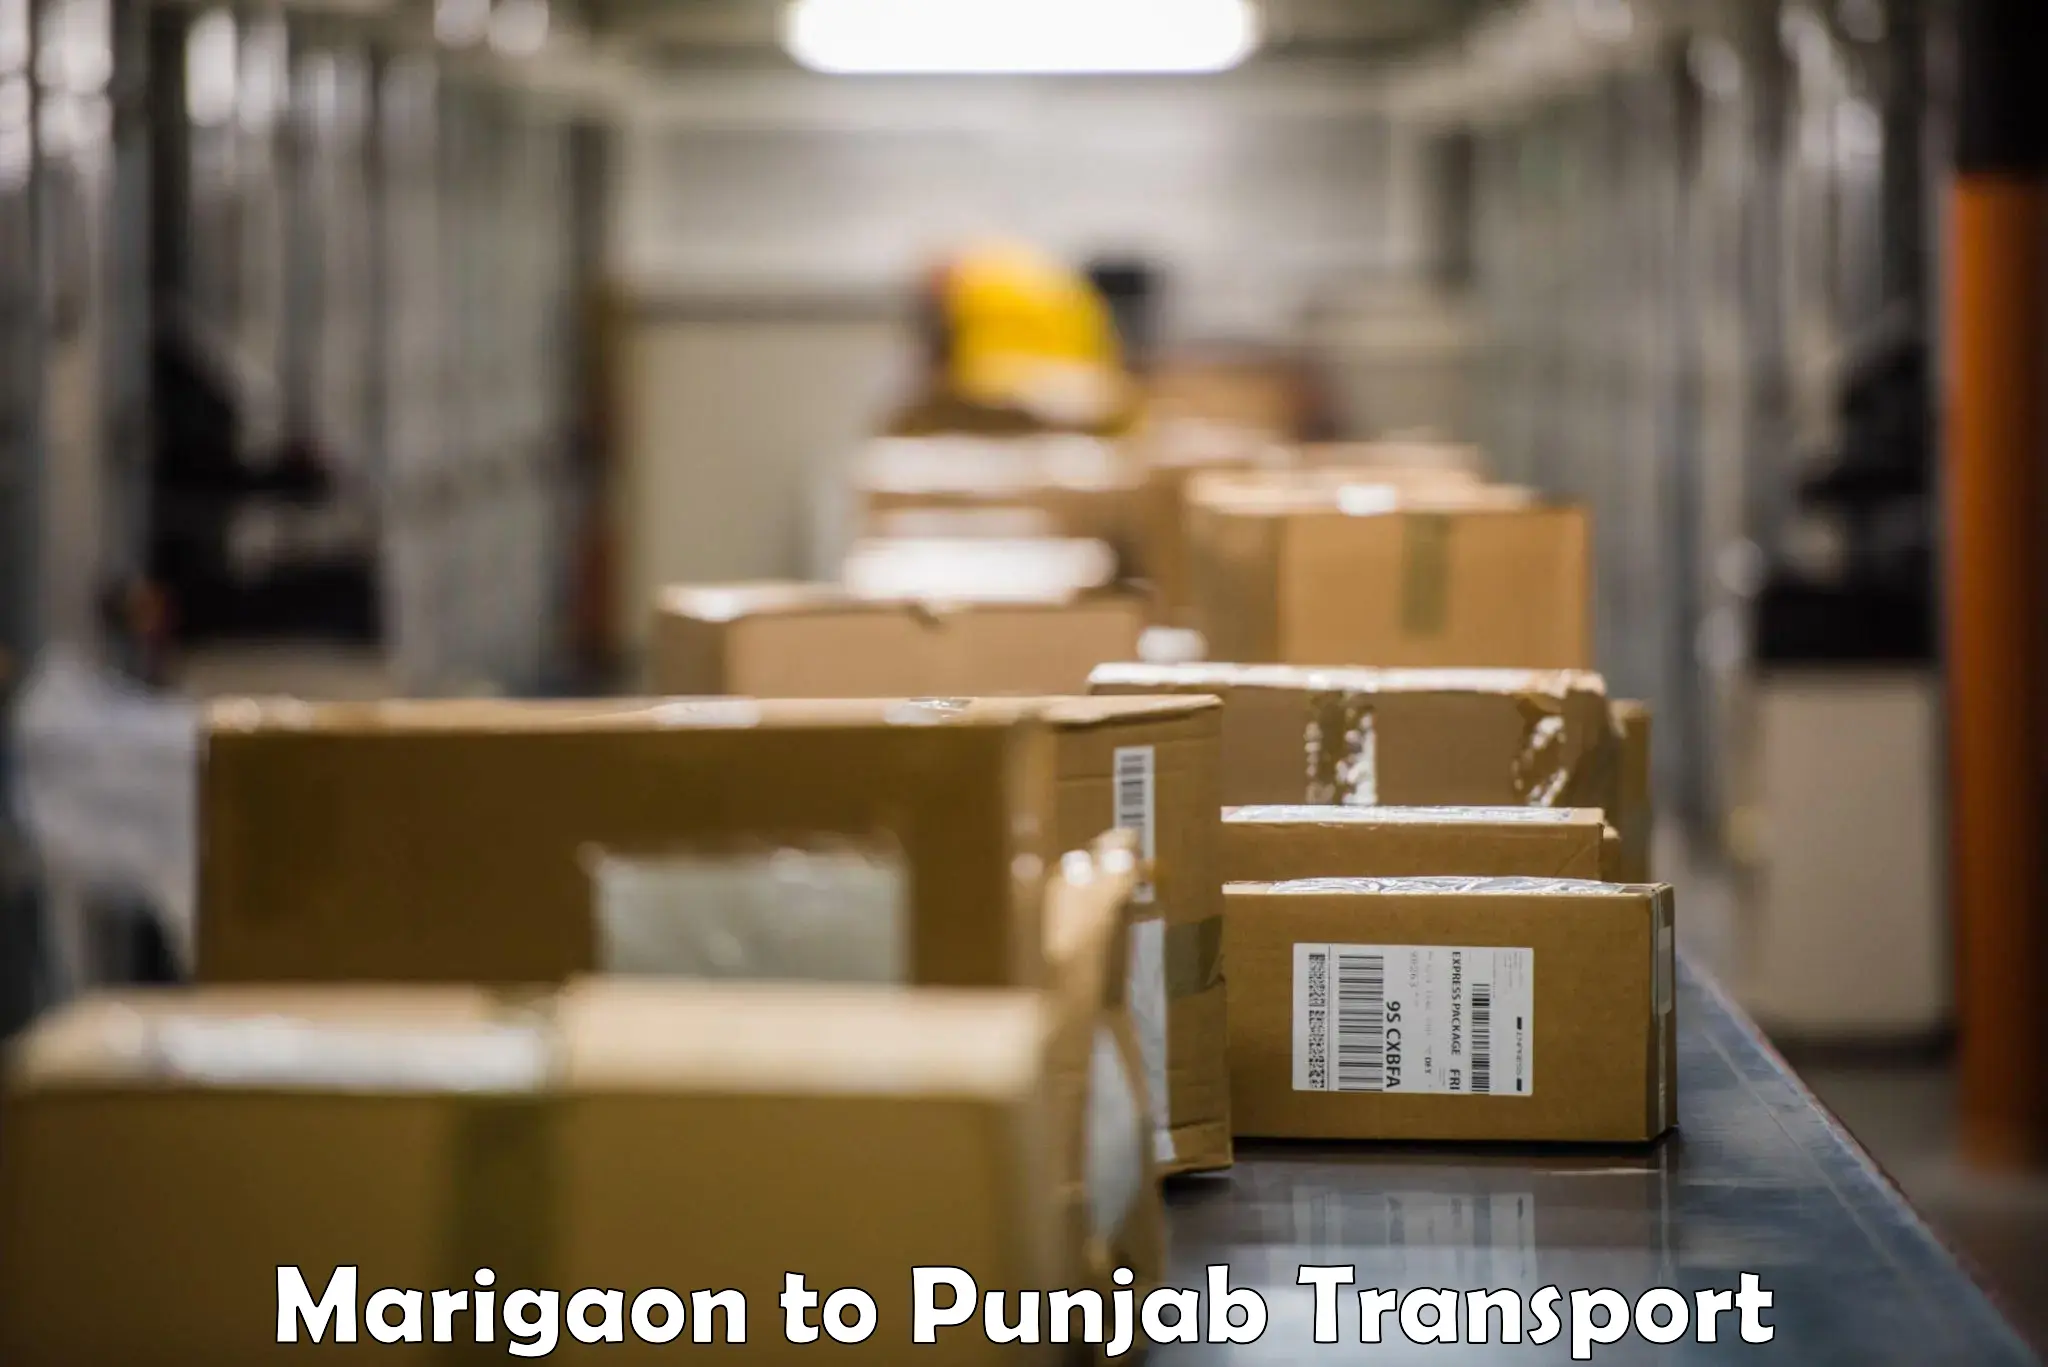 Online transport booking Marigaon to Punjab